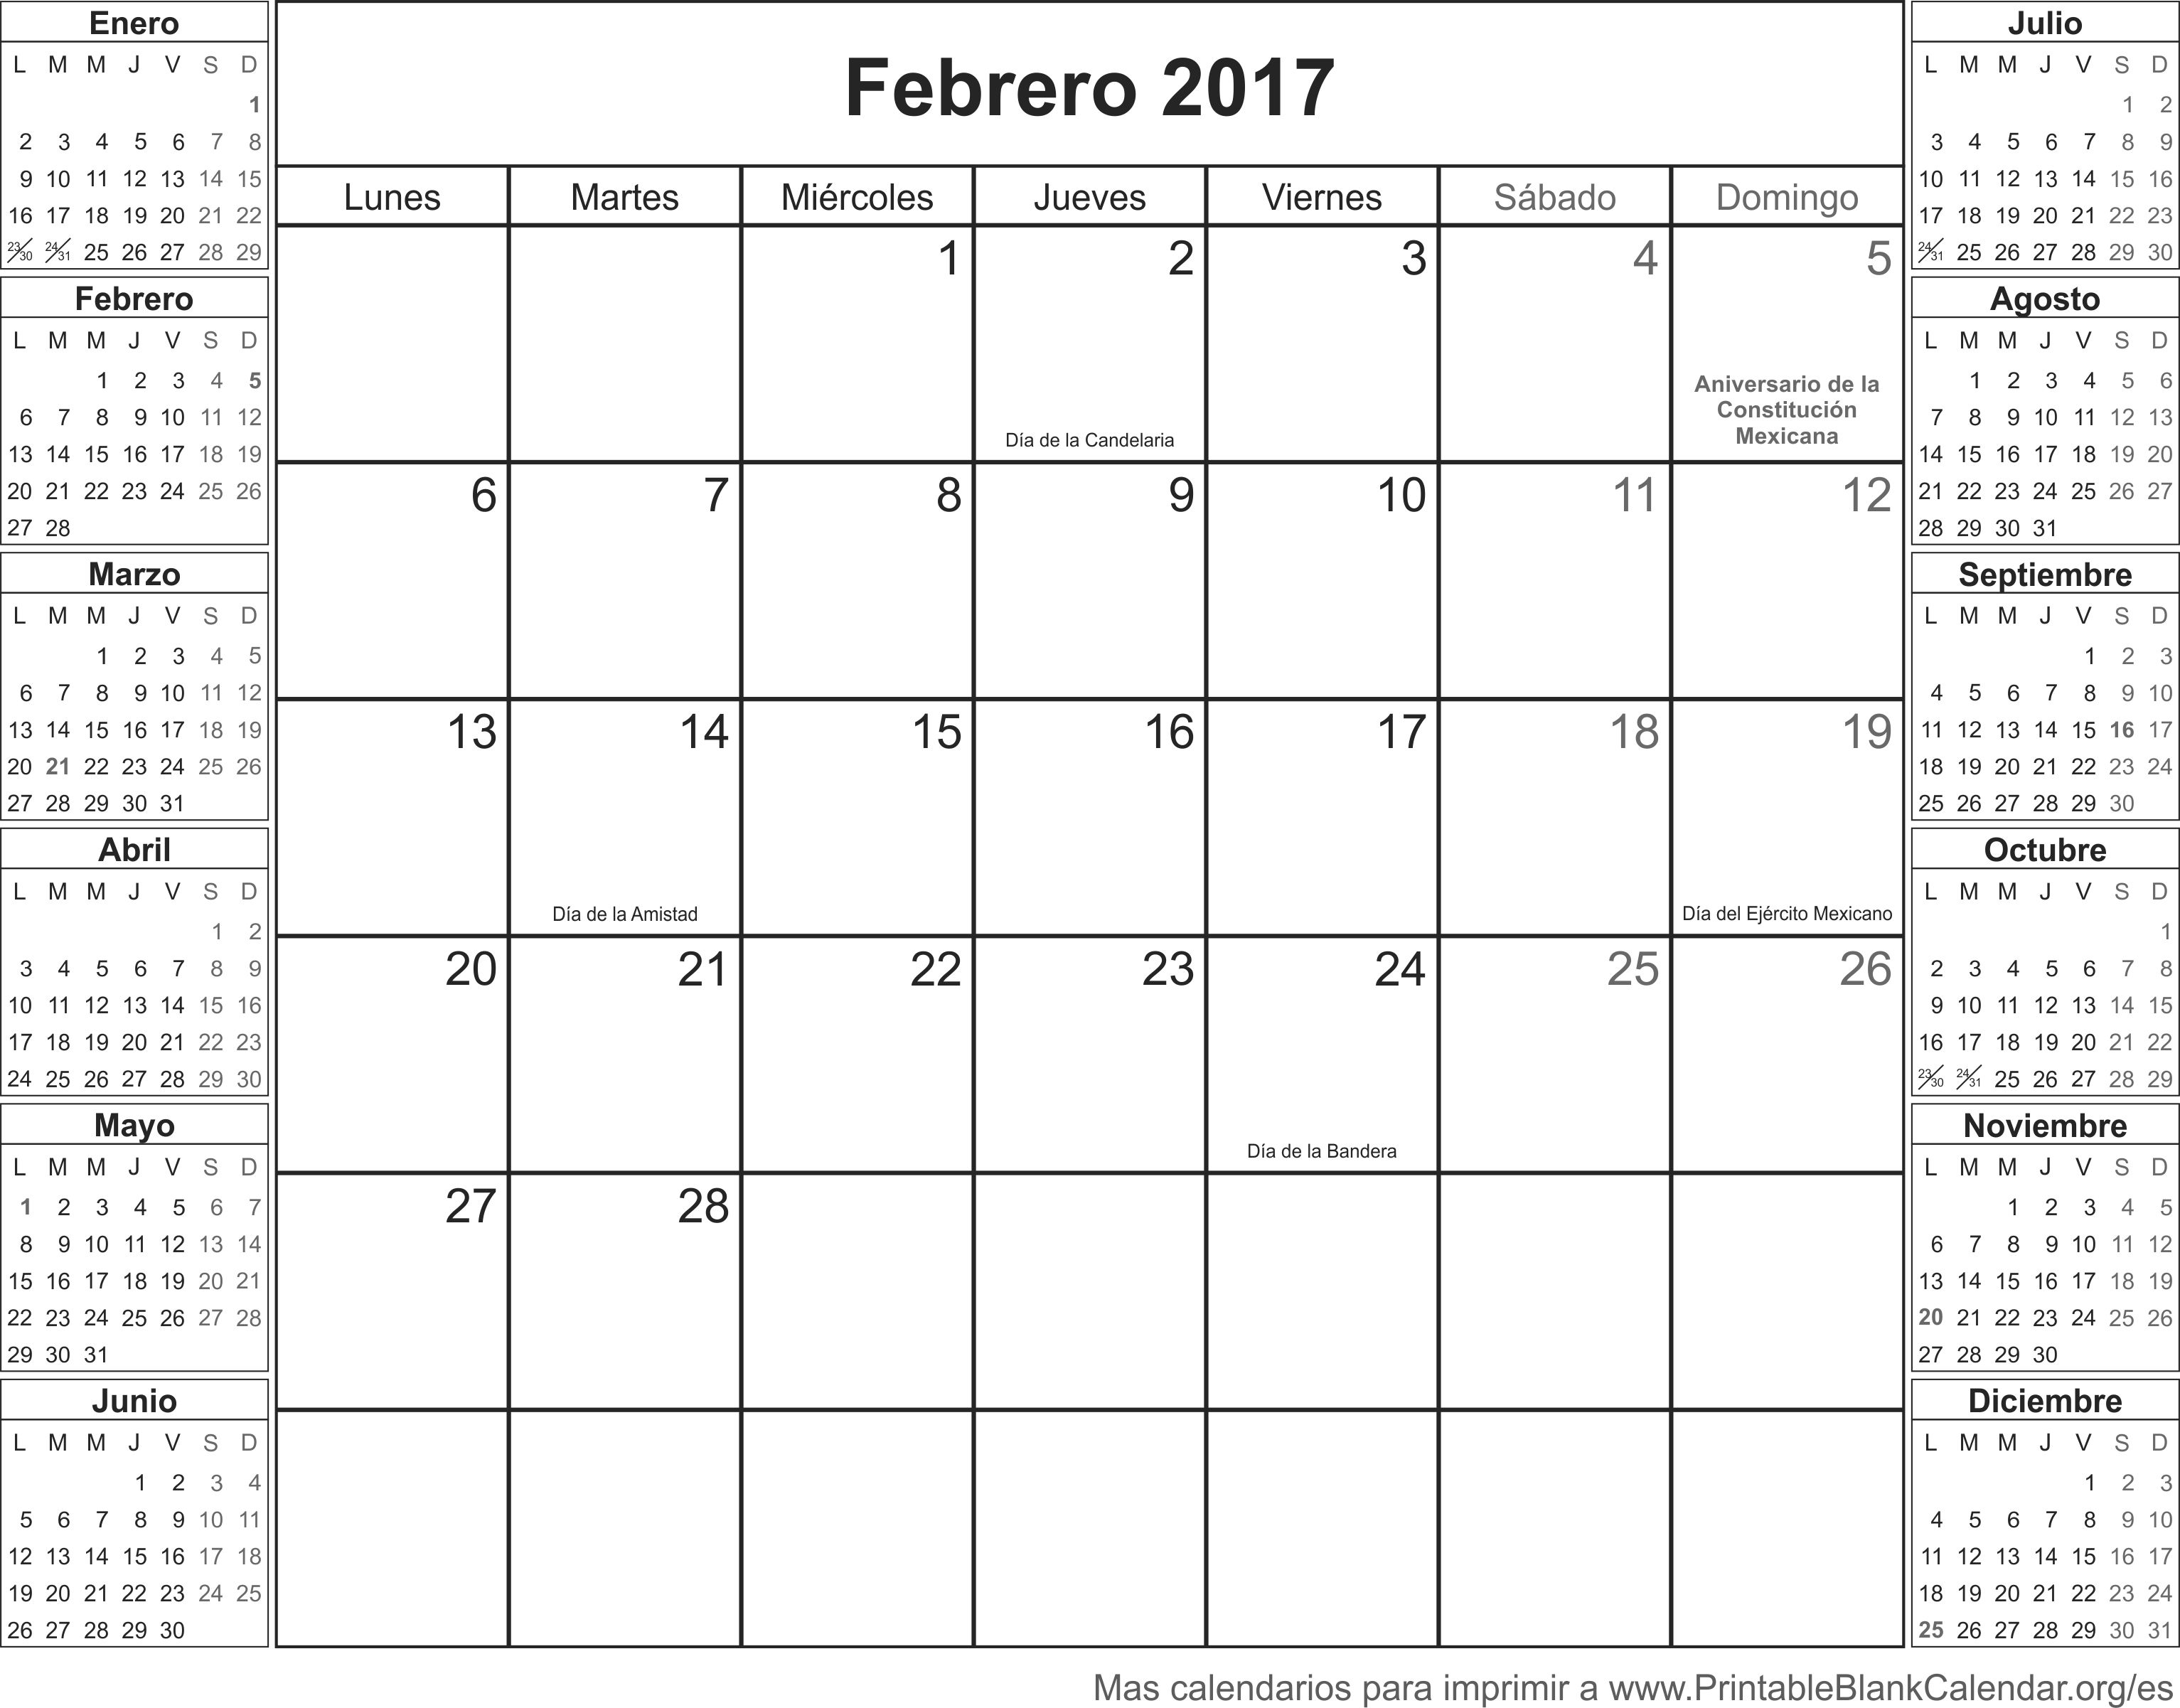 feb 2017 calendario